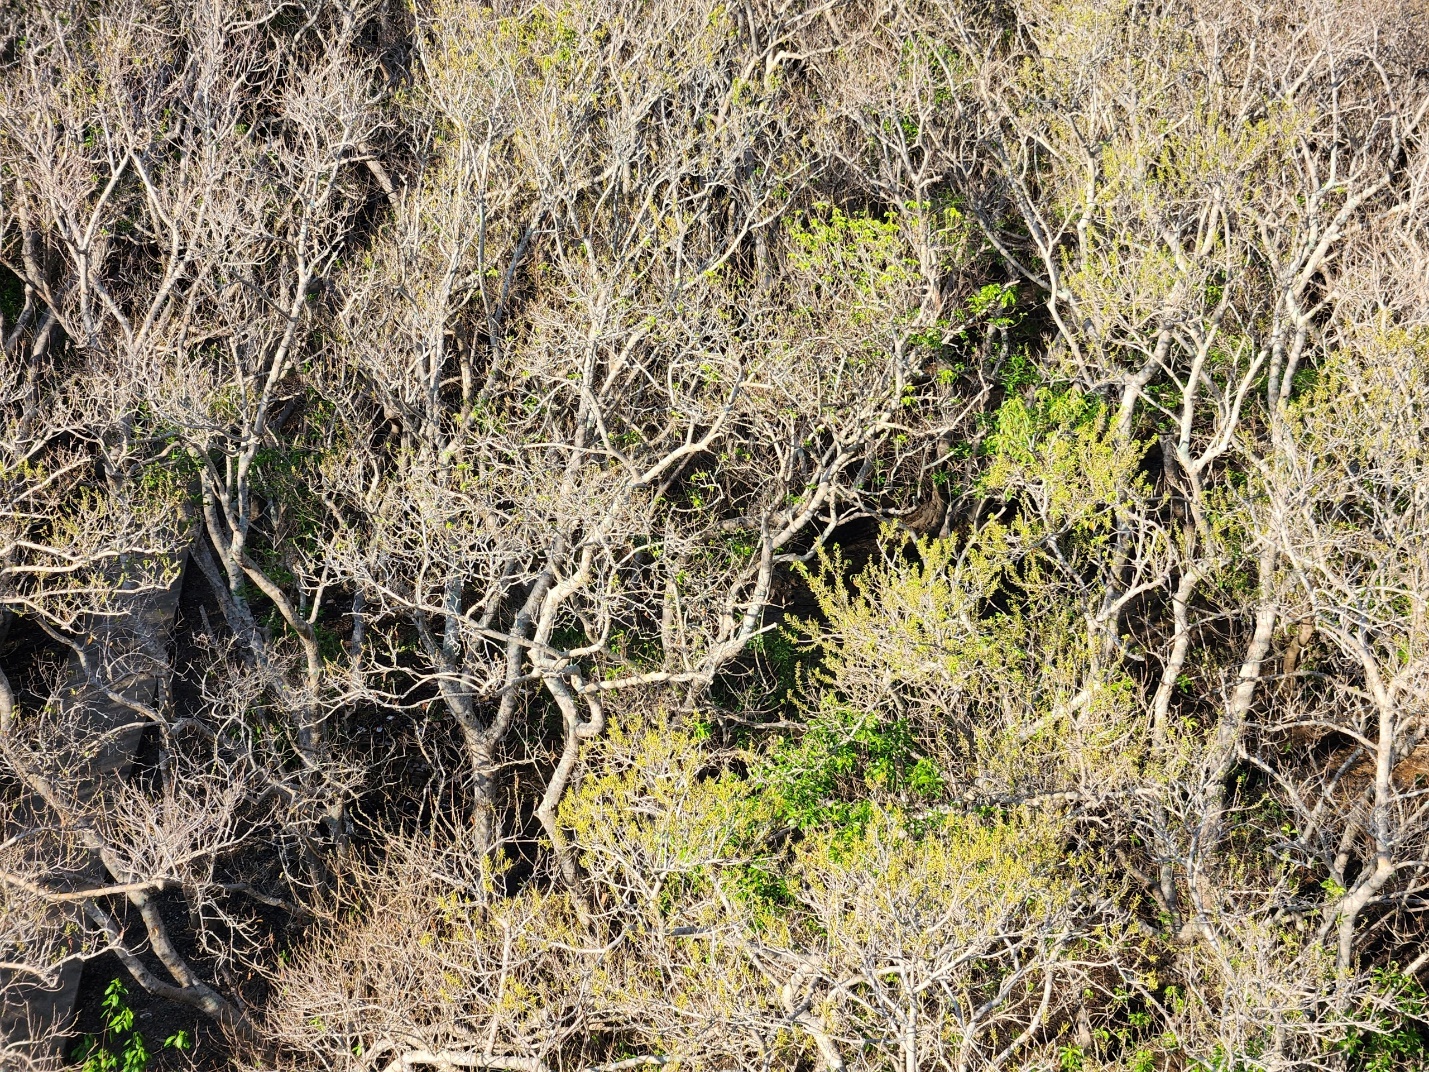 Chiêm ngưỡng mùa lá rụng ở khu rừng ngập mặn nguyên sinh quý hiếm trên đất cố đô - 9